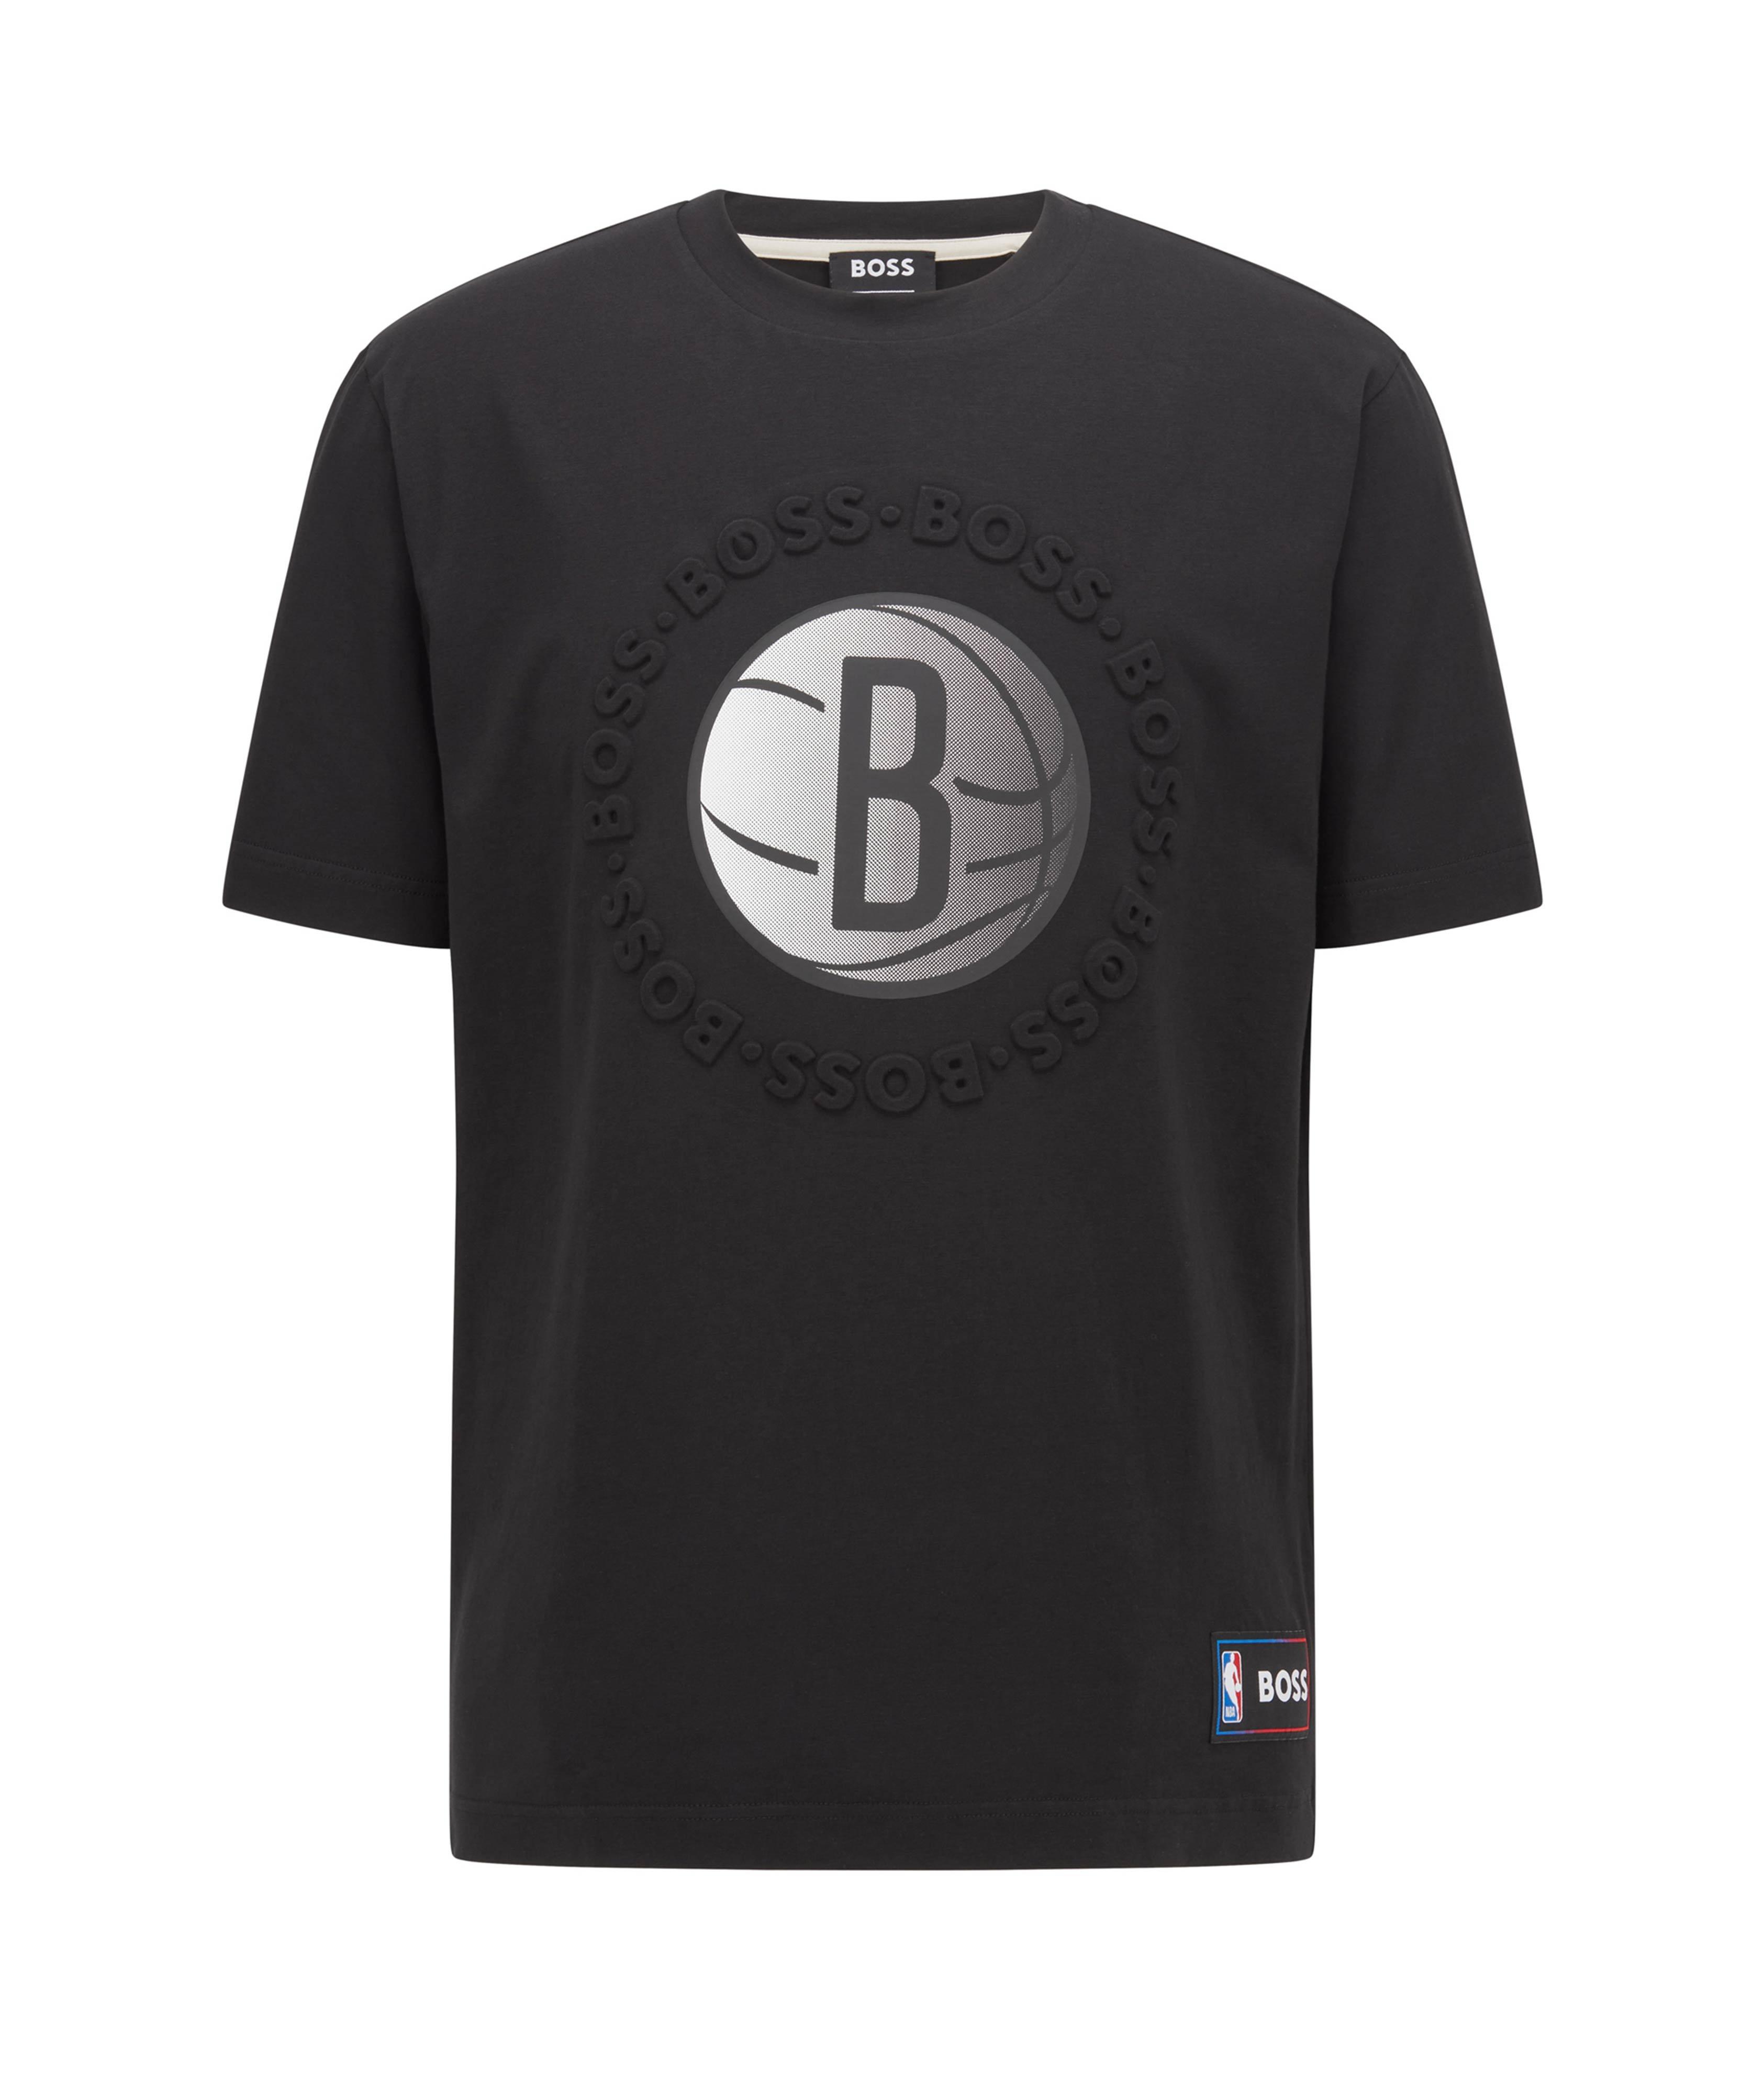 T-shirt avec logo des Nets, collection NBA image 0